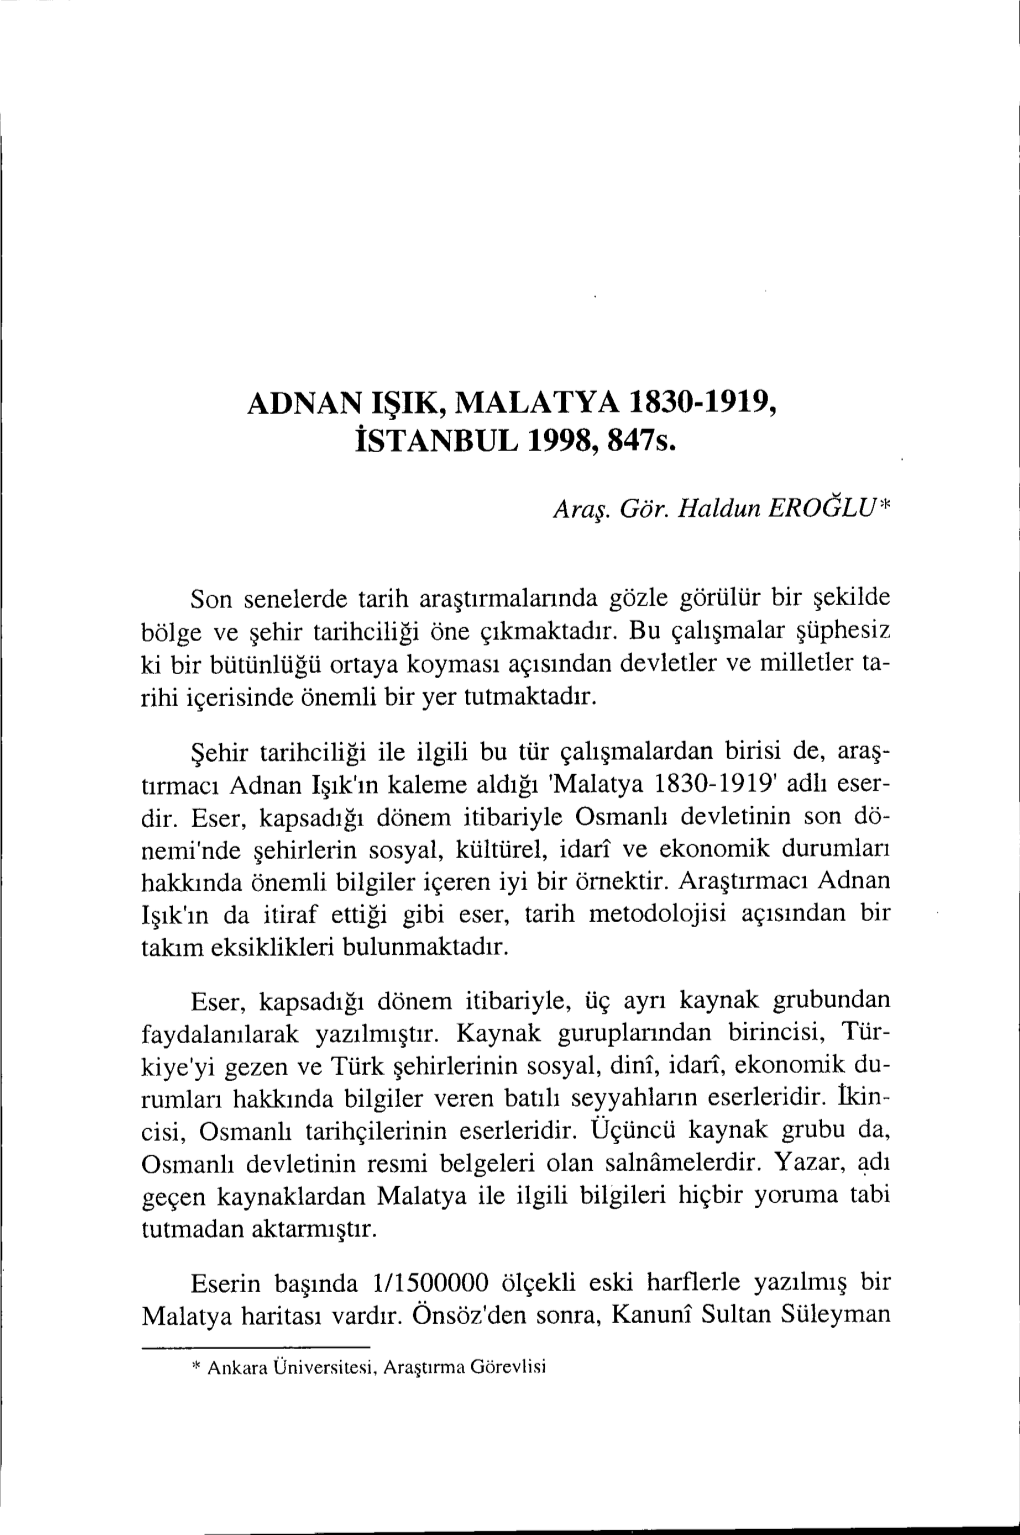 ADNAN IŞIK, MALATYA 1830-1919, Istanbul 1998, 847S